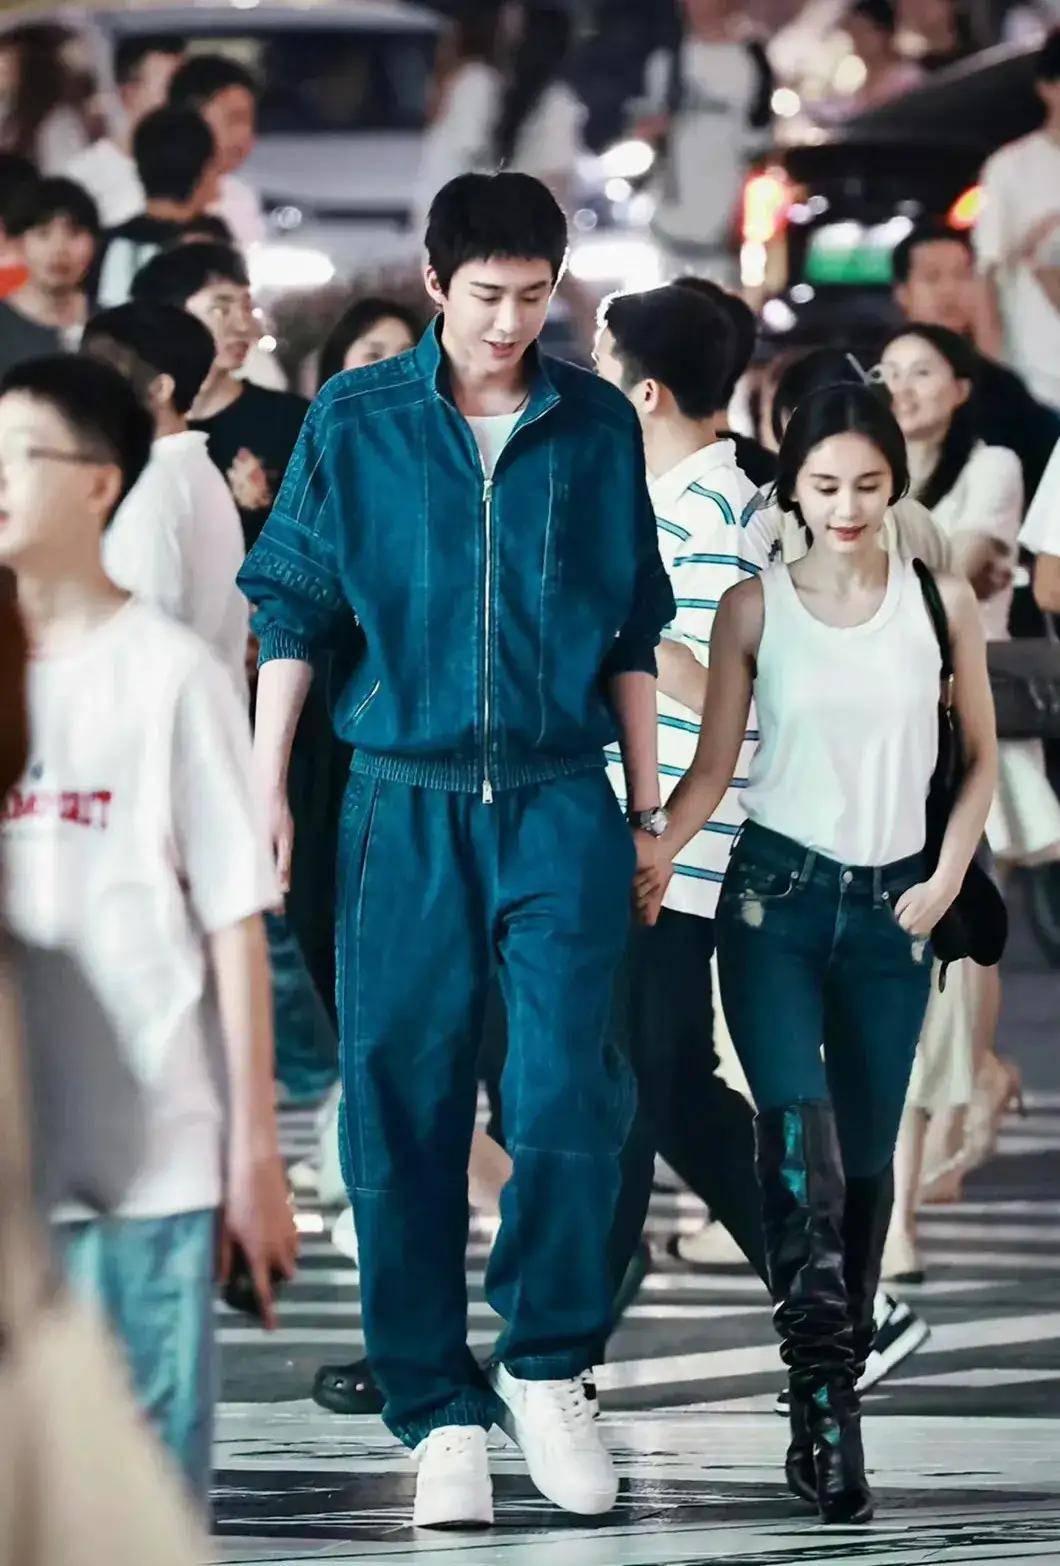 王子文刘宇宁重庆街头压马路,30厘米身高差,两人对视好甜蜜